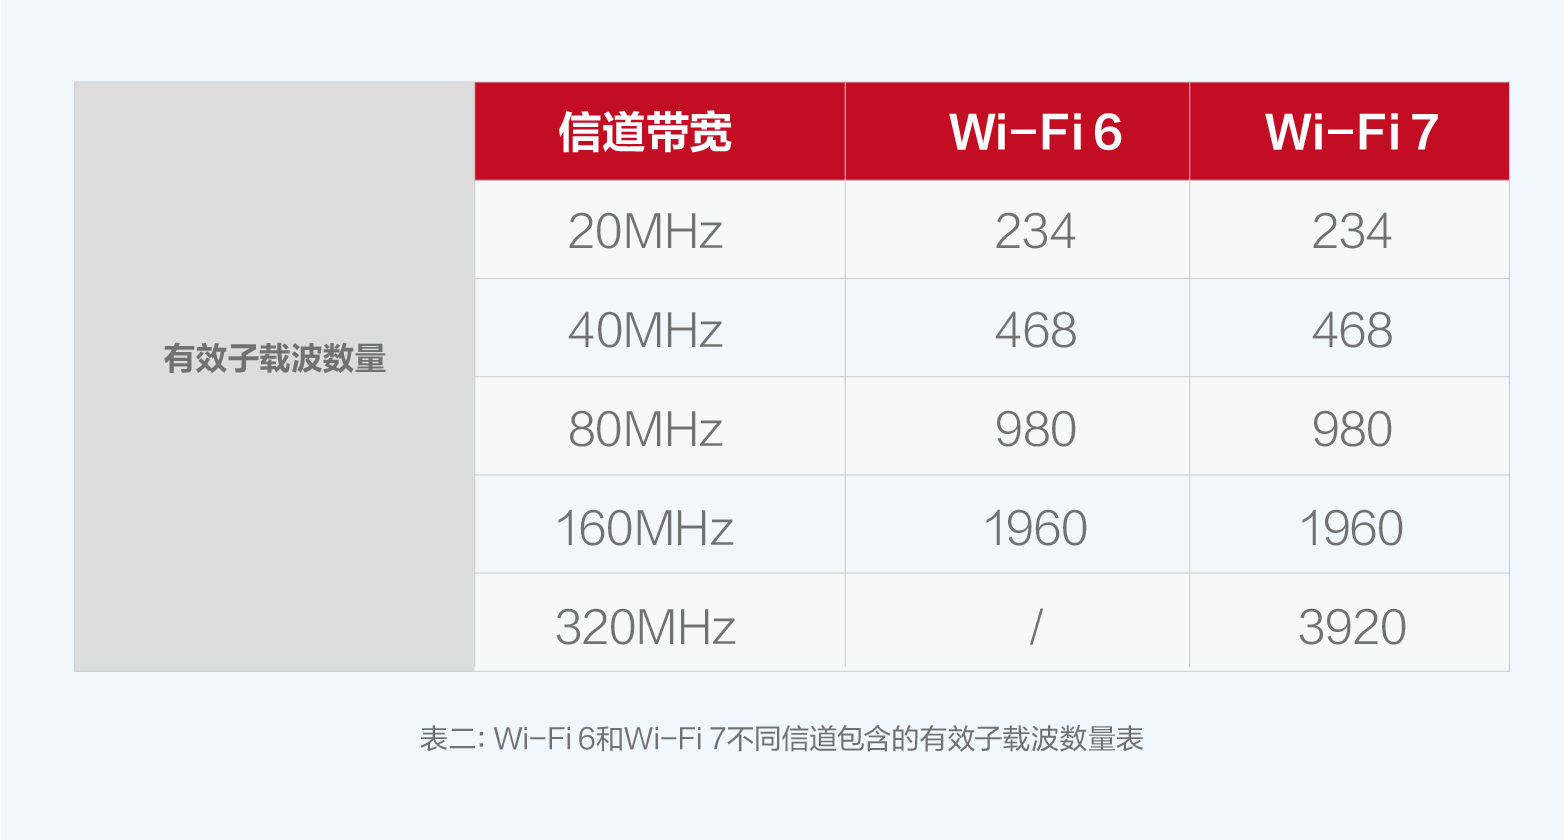 Wi-Fi 6和Wi-Fi 7不同信道包含的有效子载波数量表